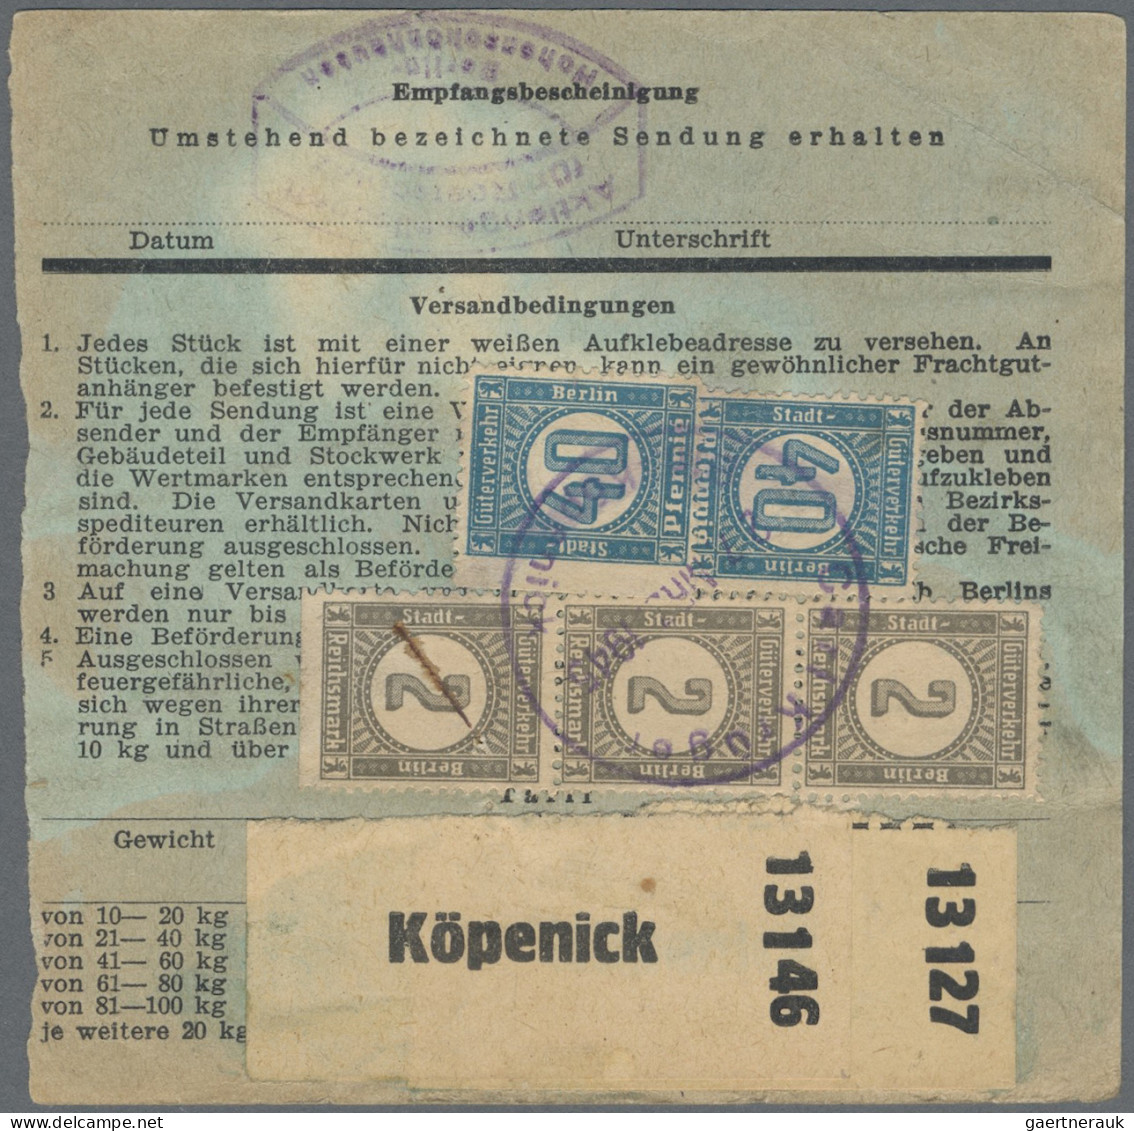 Deutsches Reich - Privatpost (Stadtpost): 1945, BERLIN/Stadt-Güter-Verkehr, 1x 1 - Postes Privées & Locales